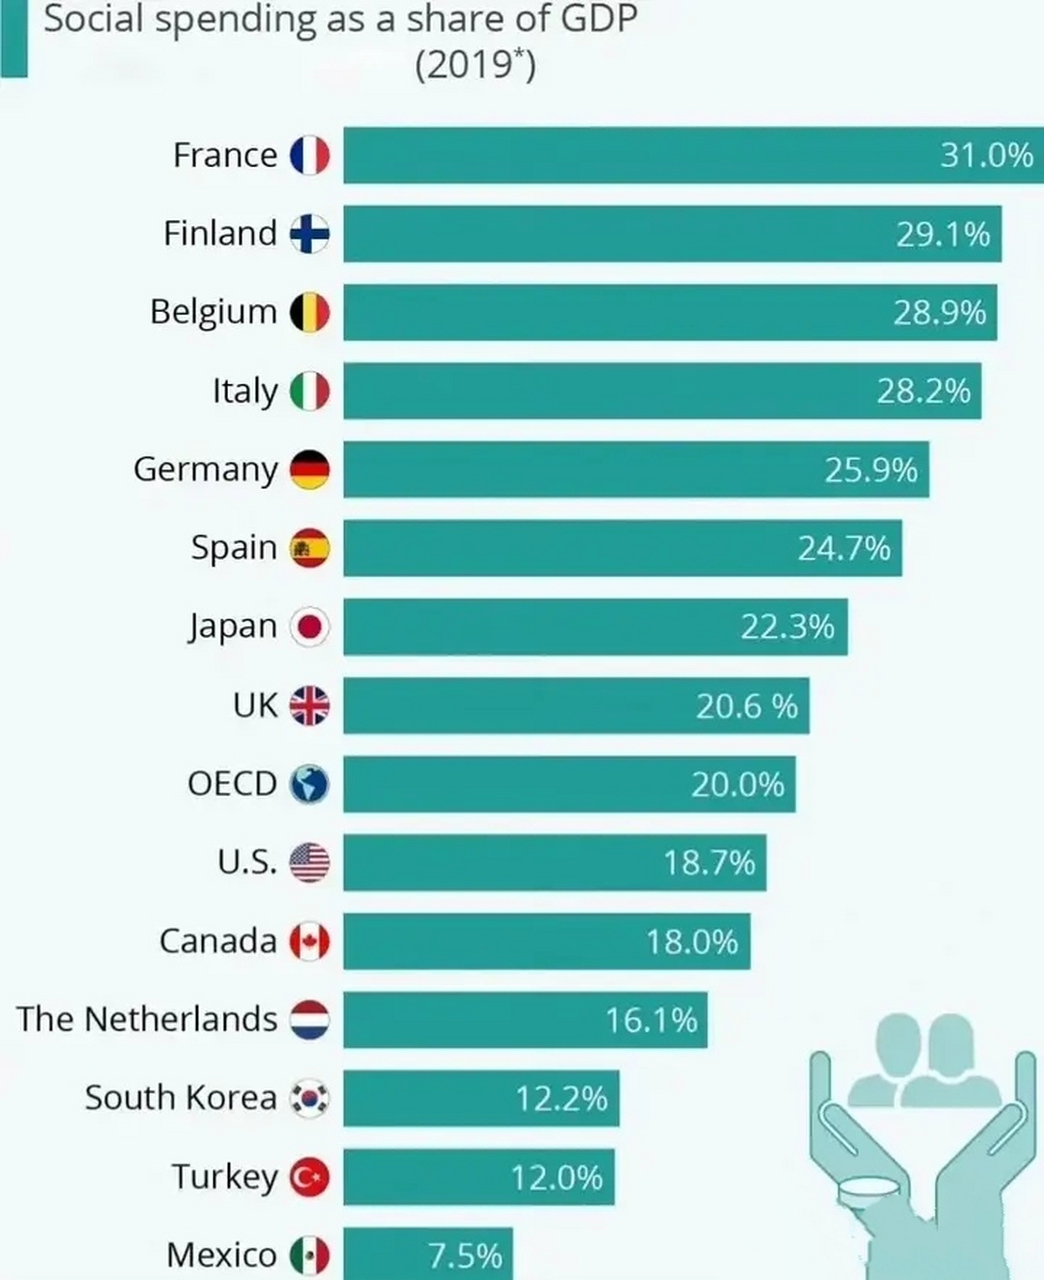 世界各国社会福利支出占比!法国最高,达到31%,墨西哥最低,仅是75%